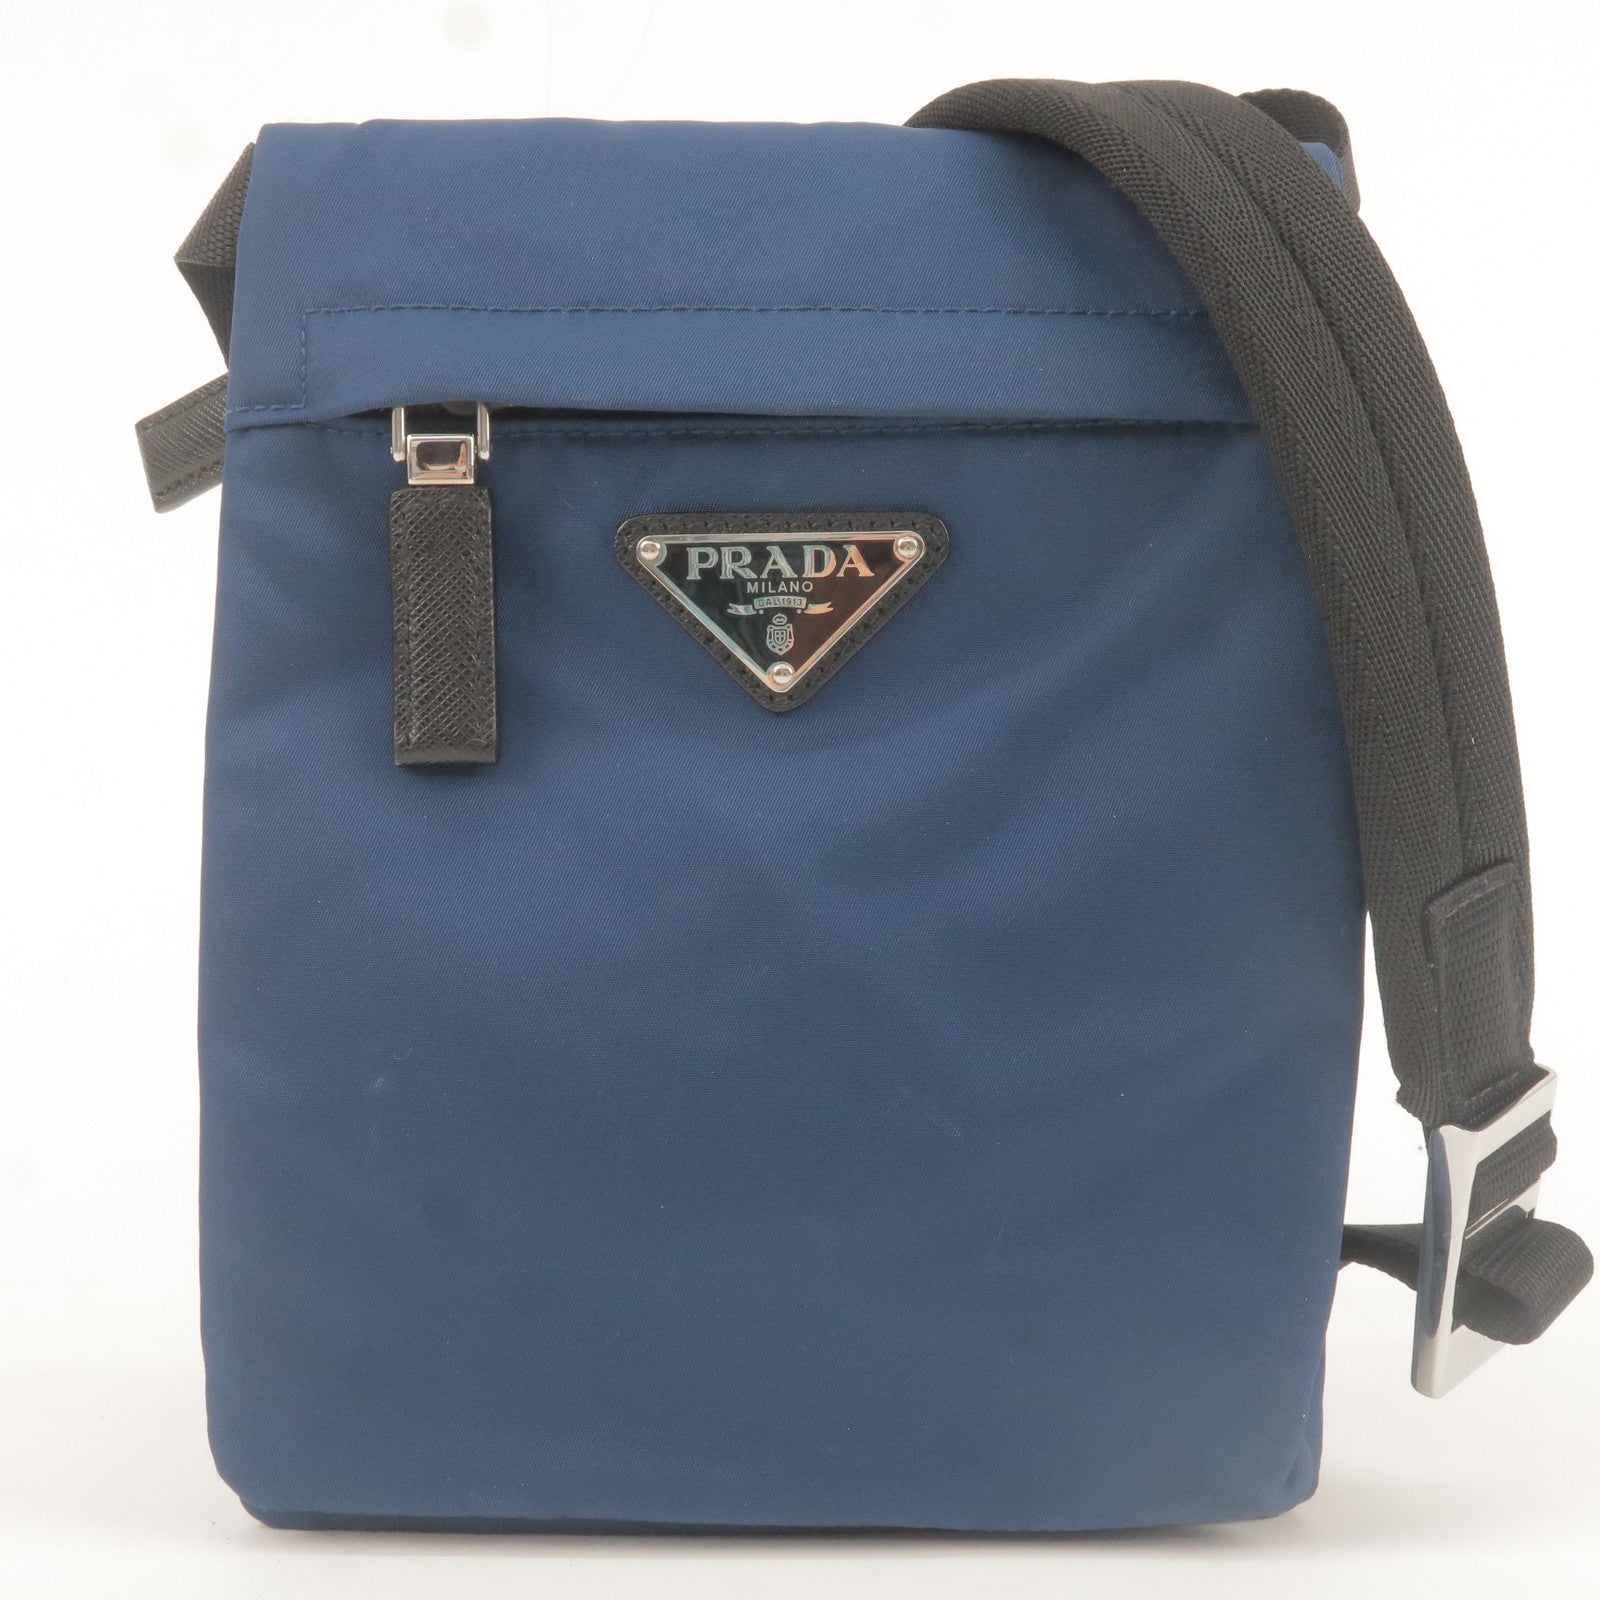 Prada Outlet Handbag Reveal Unbagging & First Impression! - YouTube